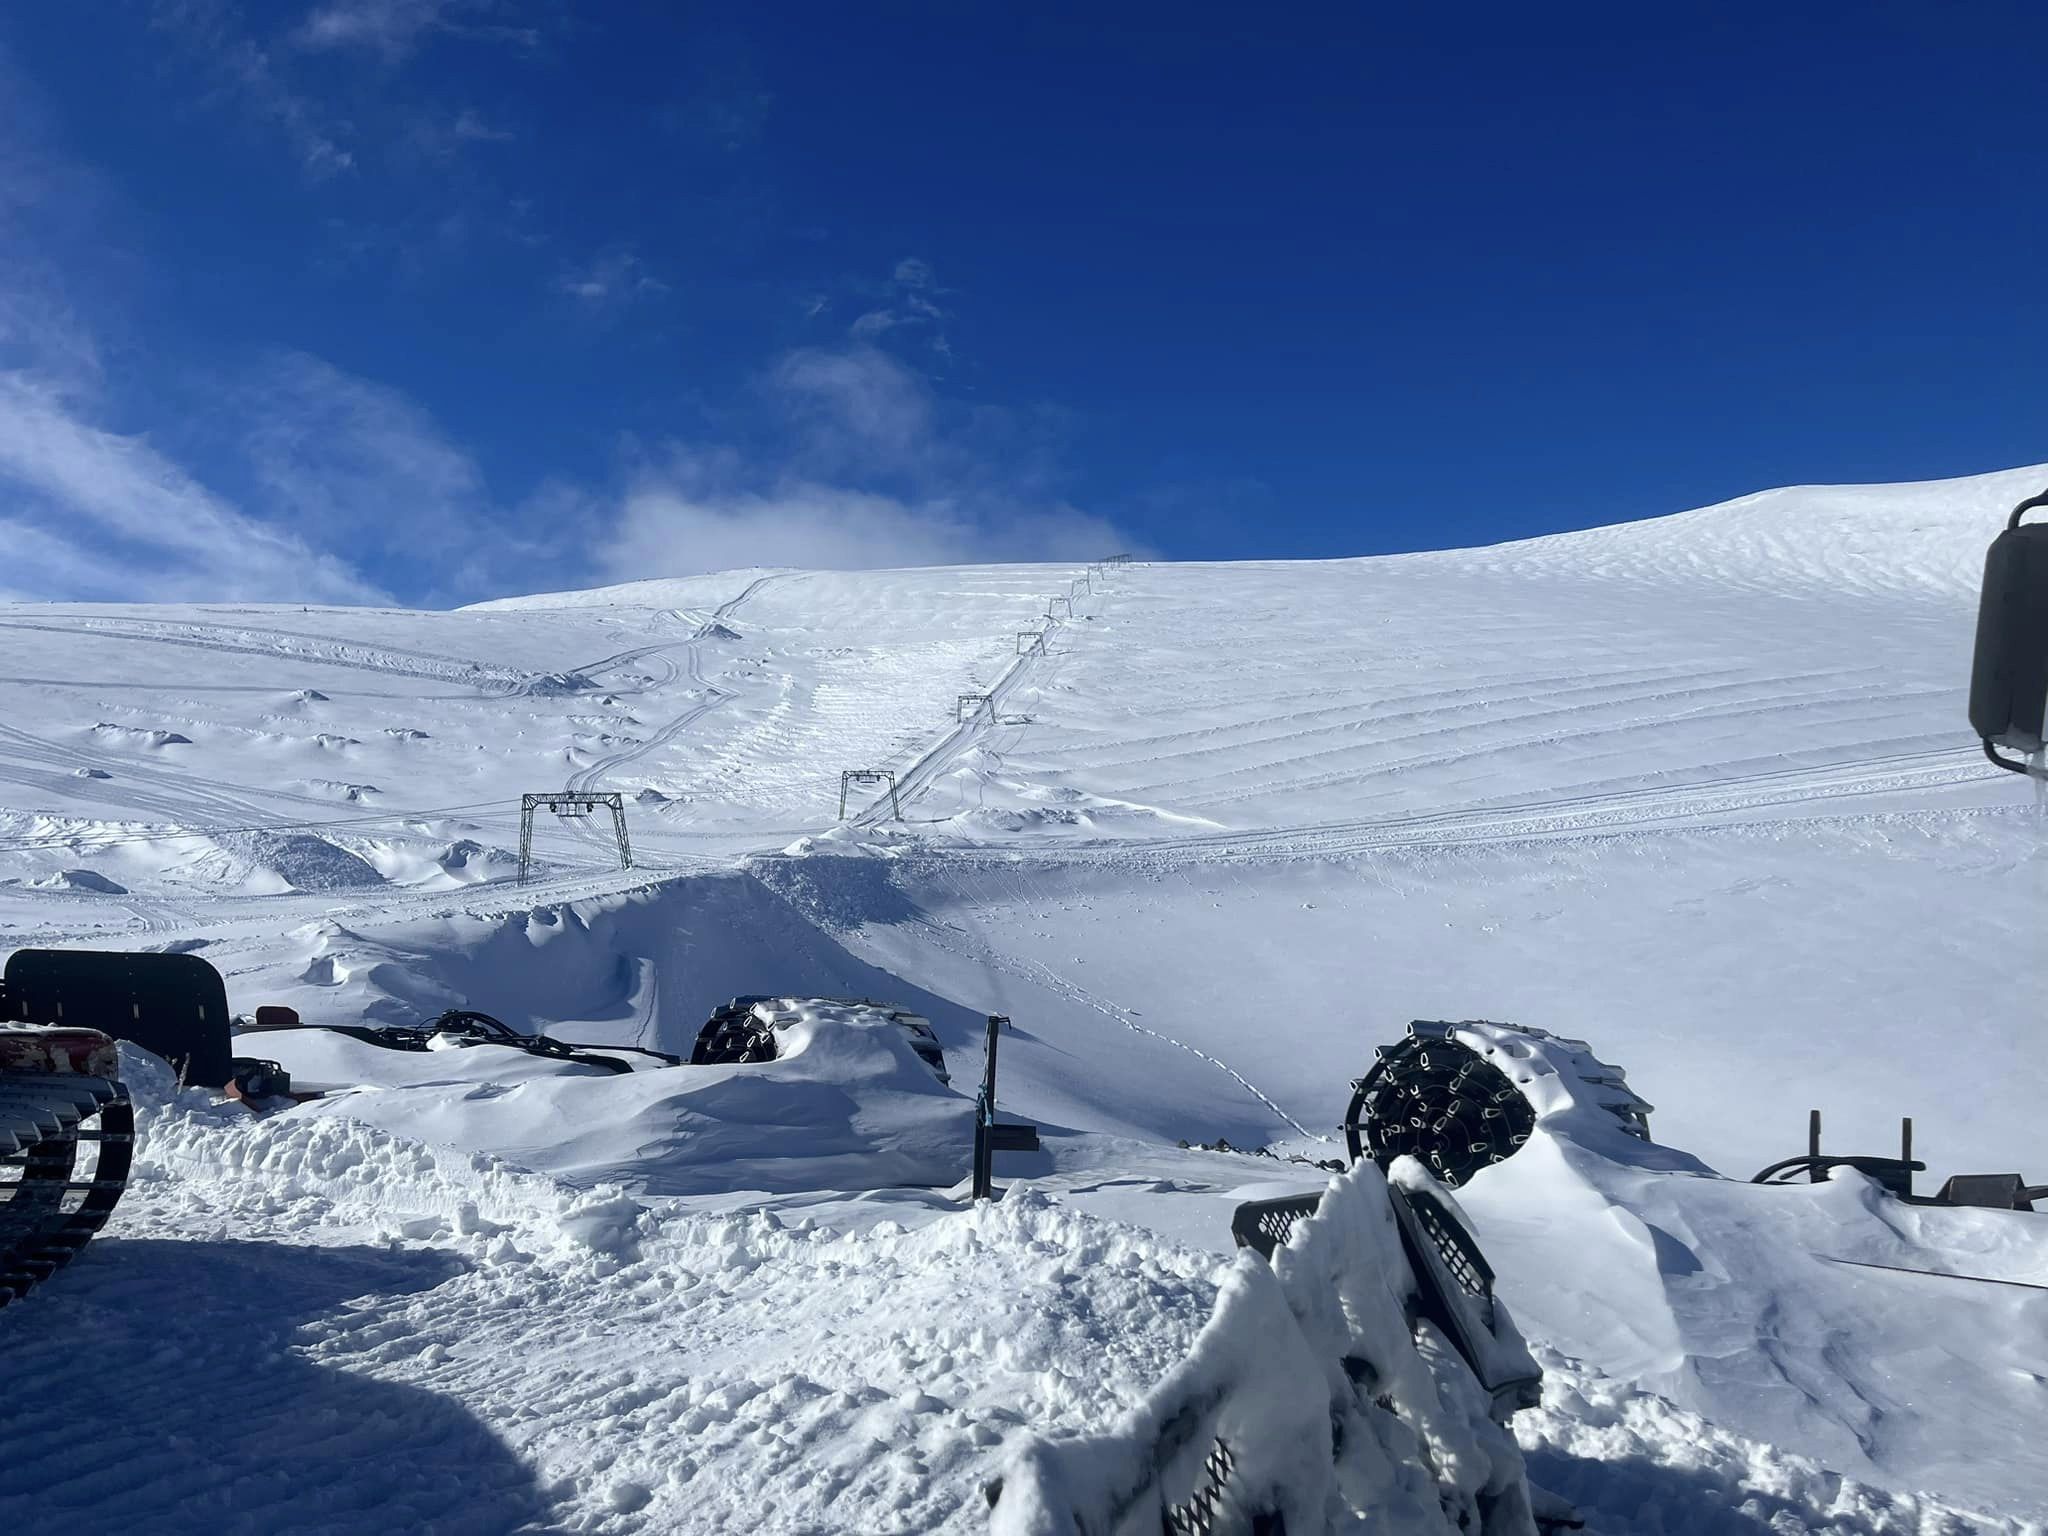 Galdhøpiggen (Noruega) abrirá el 13 de mayo con hasta 8 metros de nieve